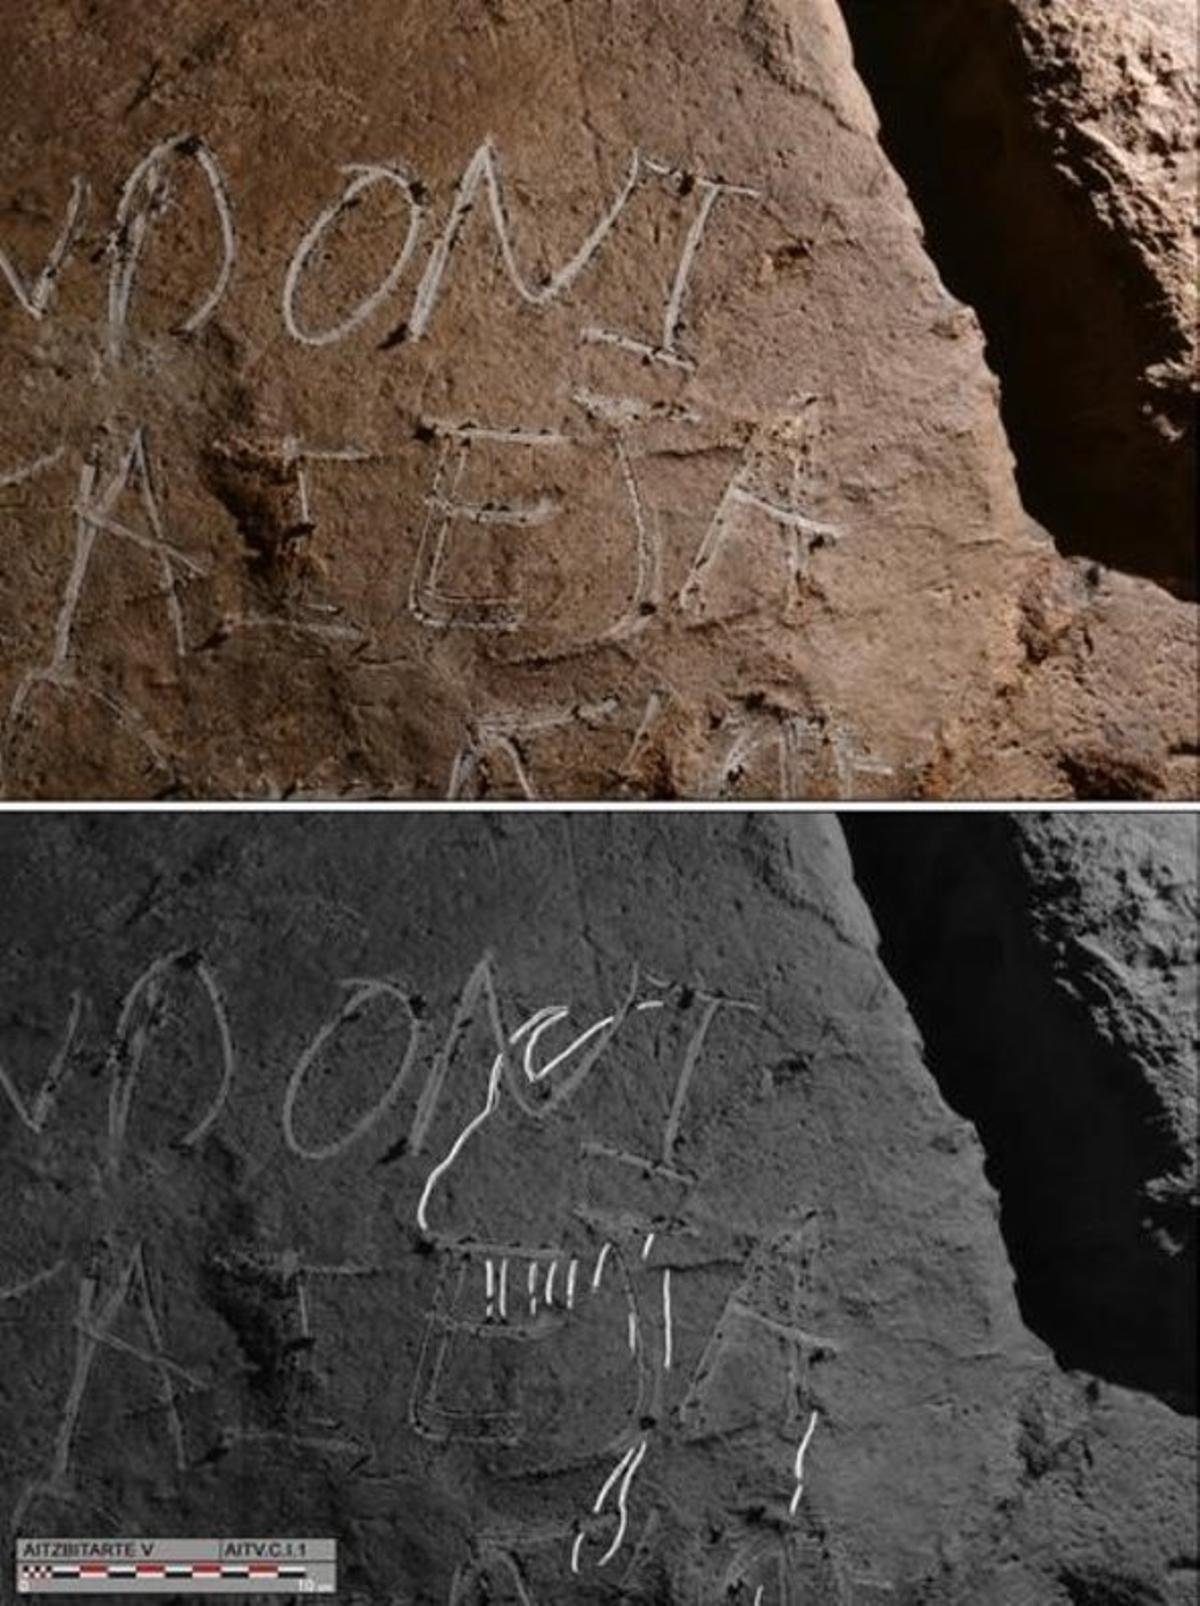 La pintada de dos nombres tapa la vista de un grabado prehistórico almacenado desde hace 27.000 años en las cuevas de Aitzbitarte, en el País Vasco